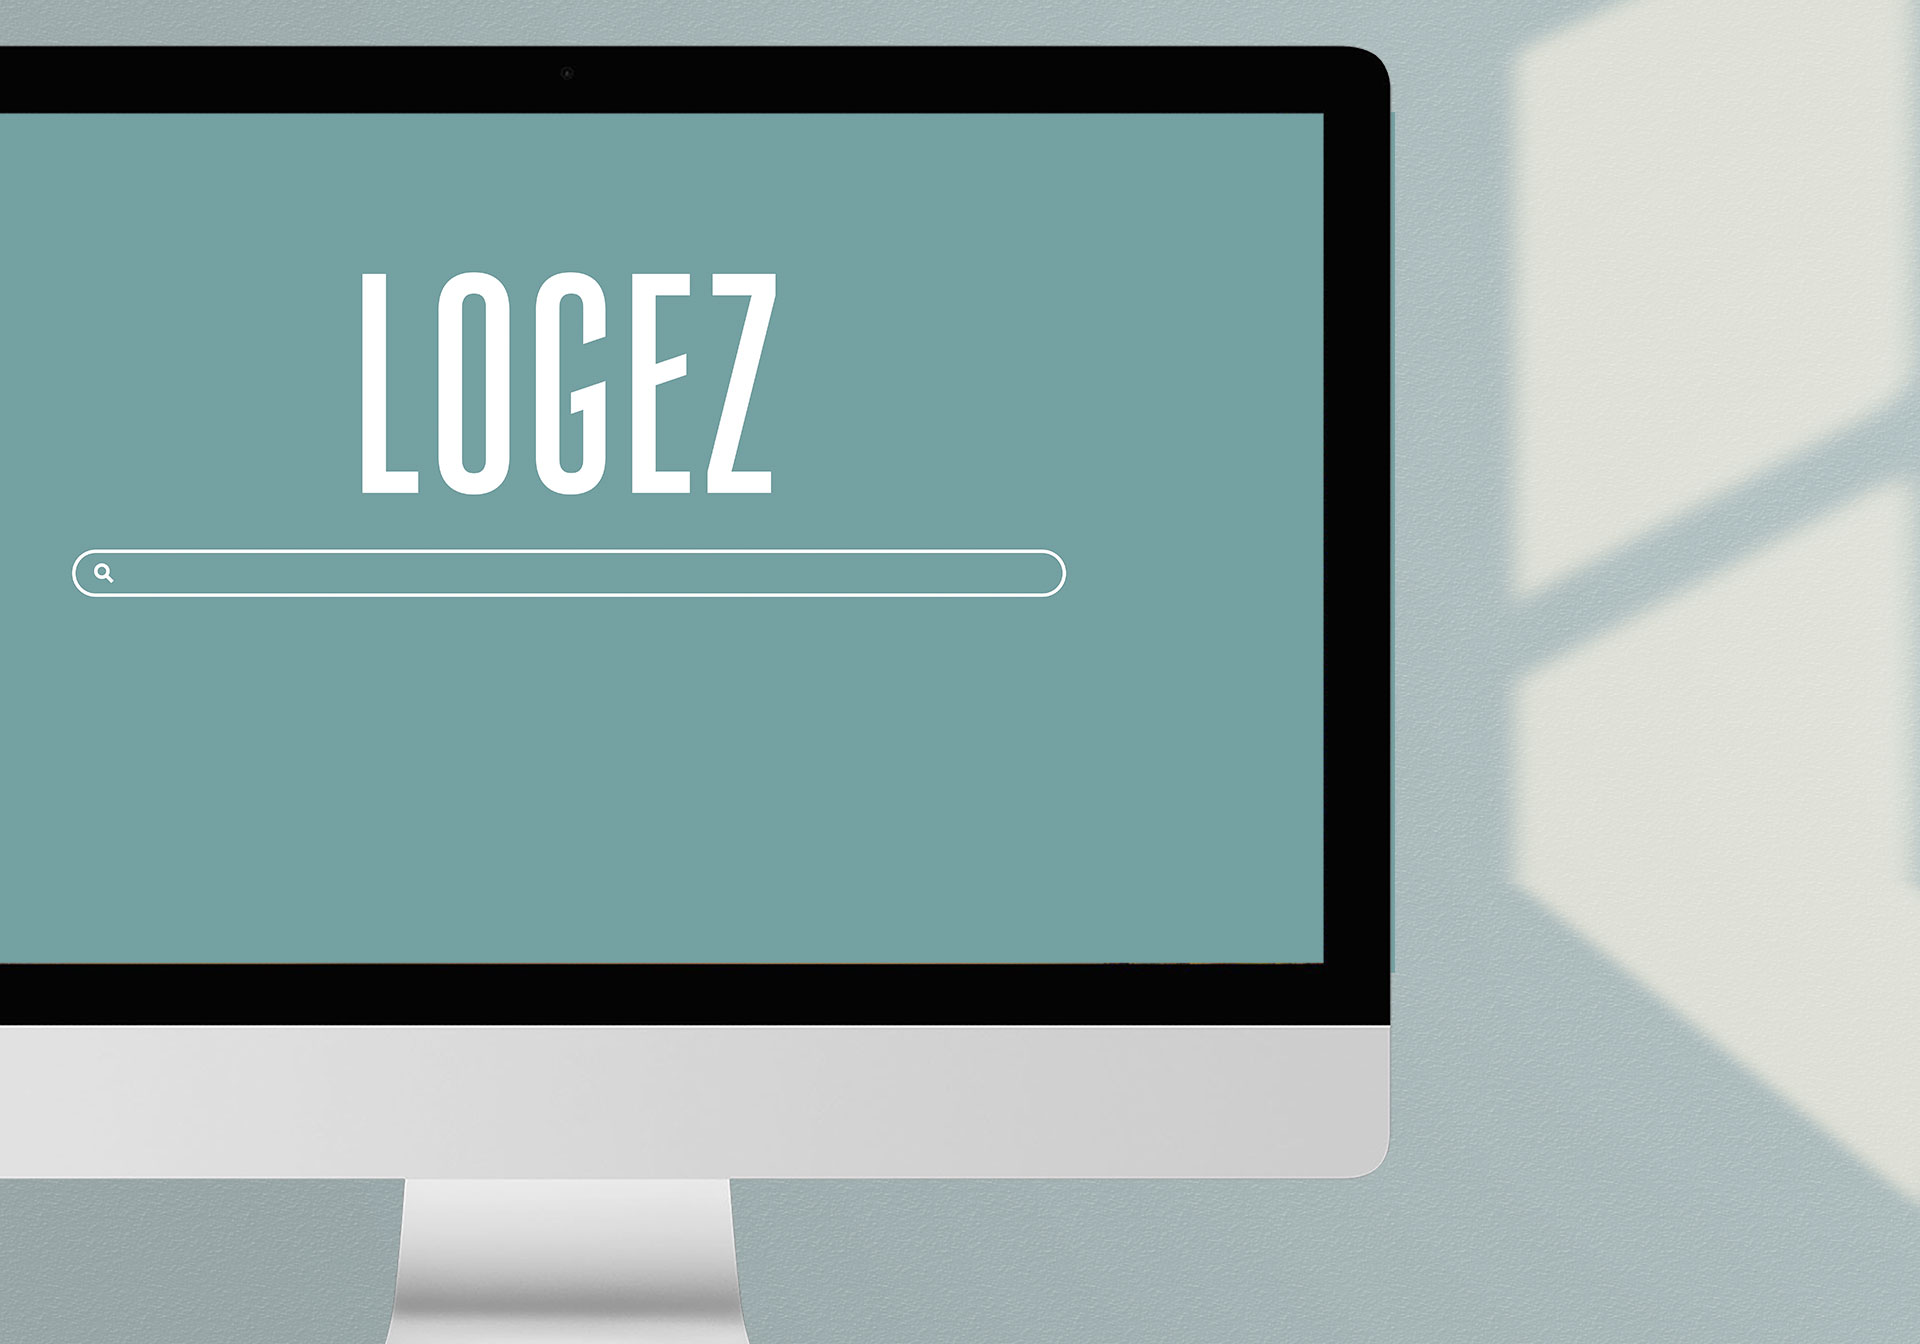 iMac mit Suchfeld und Logez Logo, SEO